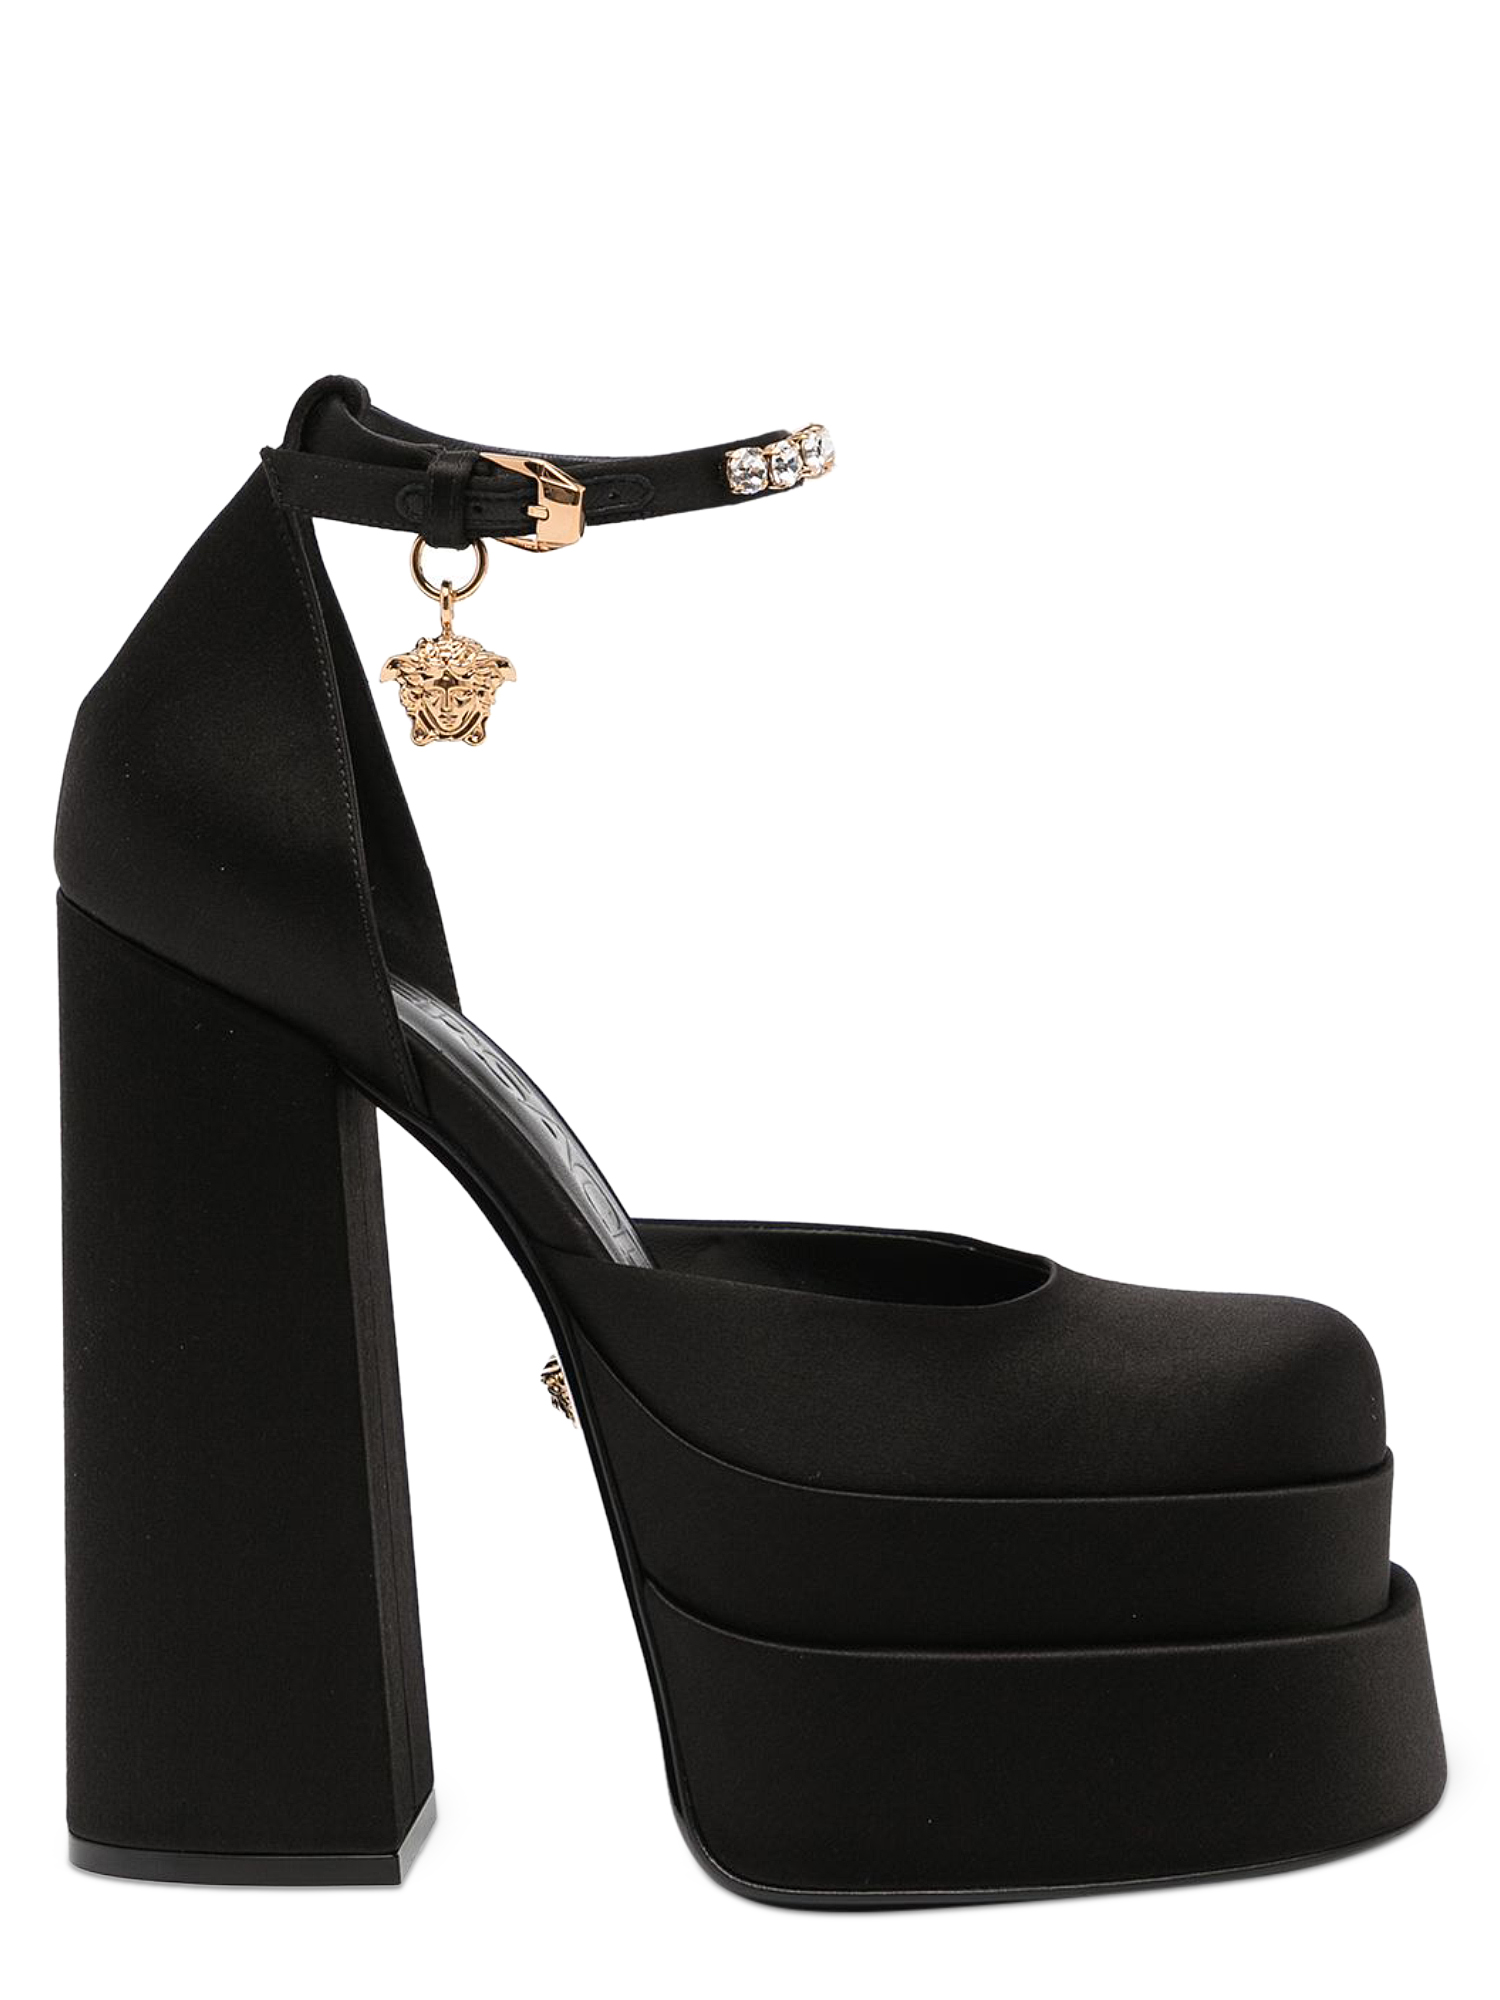 Escarpins Pour Femme - Versace - En Leather Black - Taille: IT 37.5 - EU 37.5